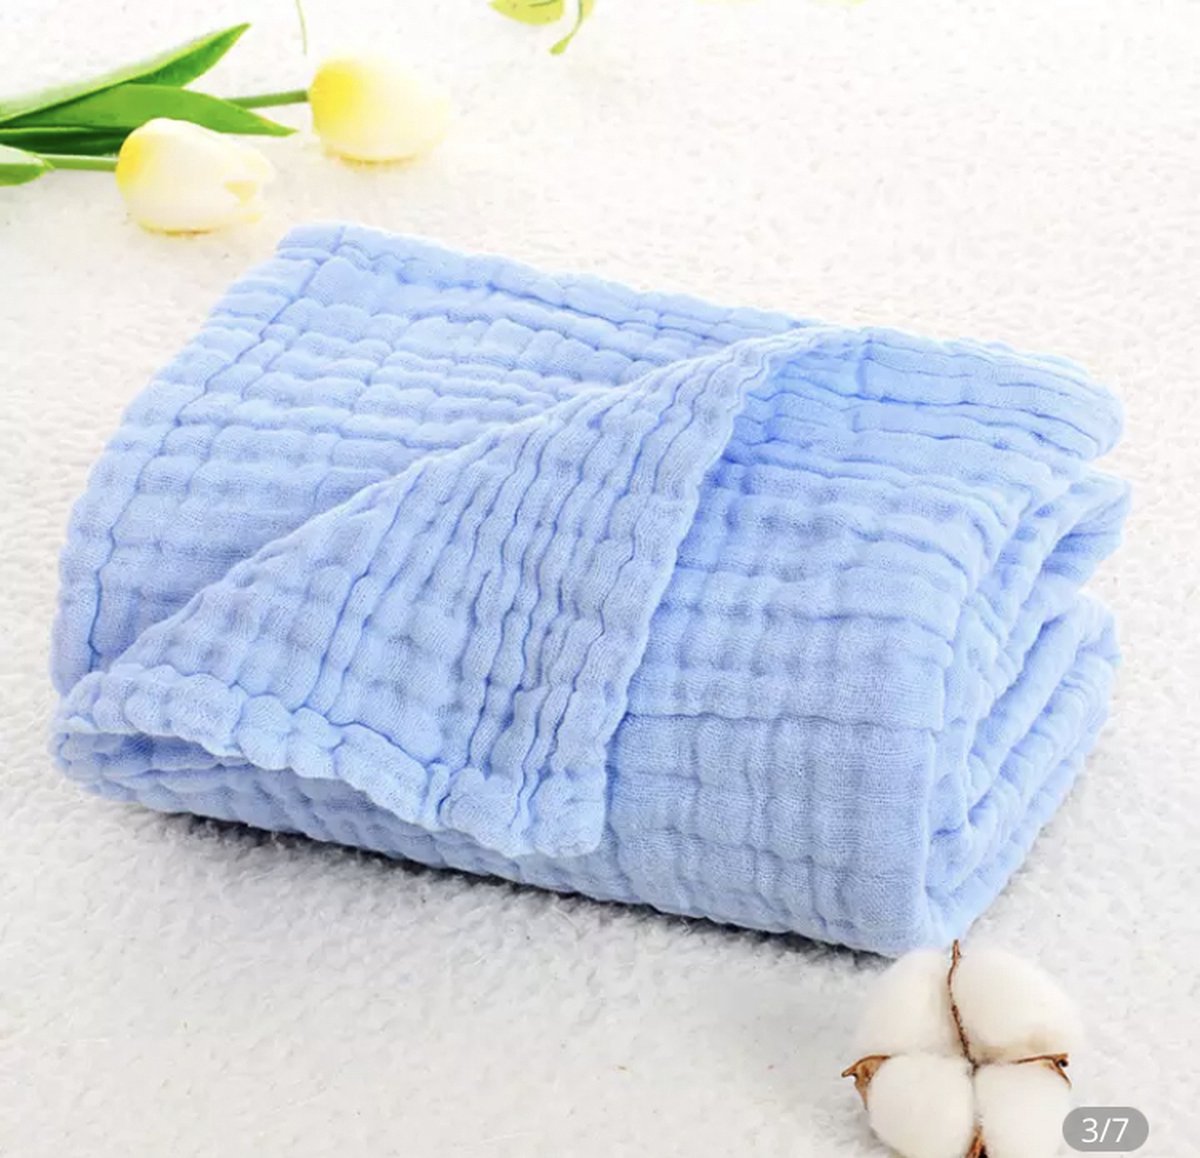 IL BAMBINI - Inbakerdoek - 6 laags mousseline deken voor pasgeboren baby - blauw